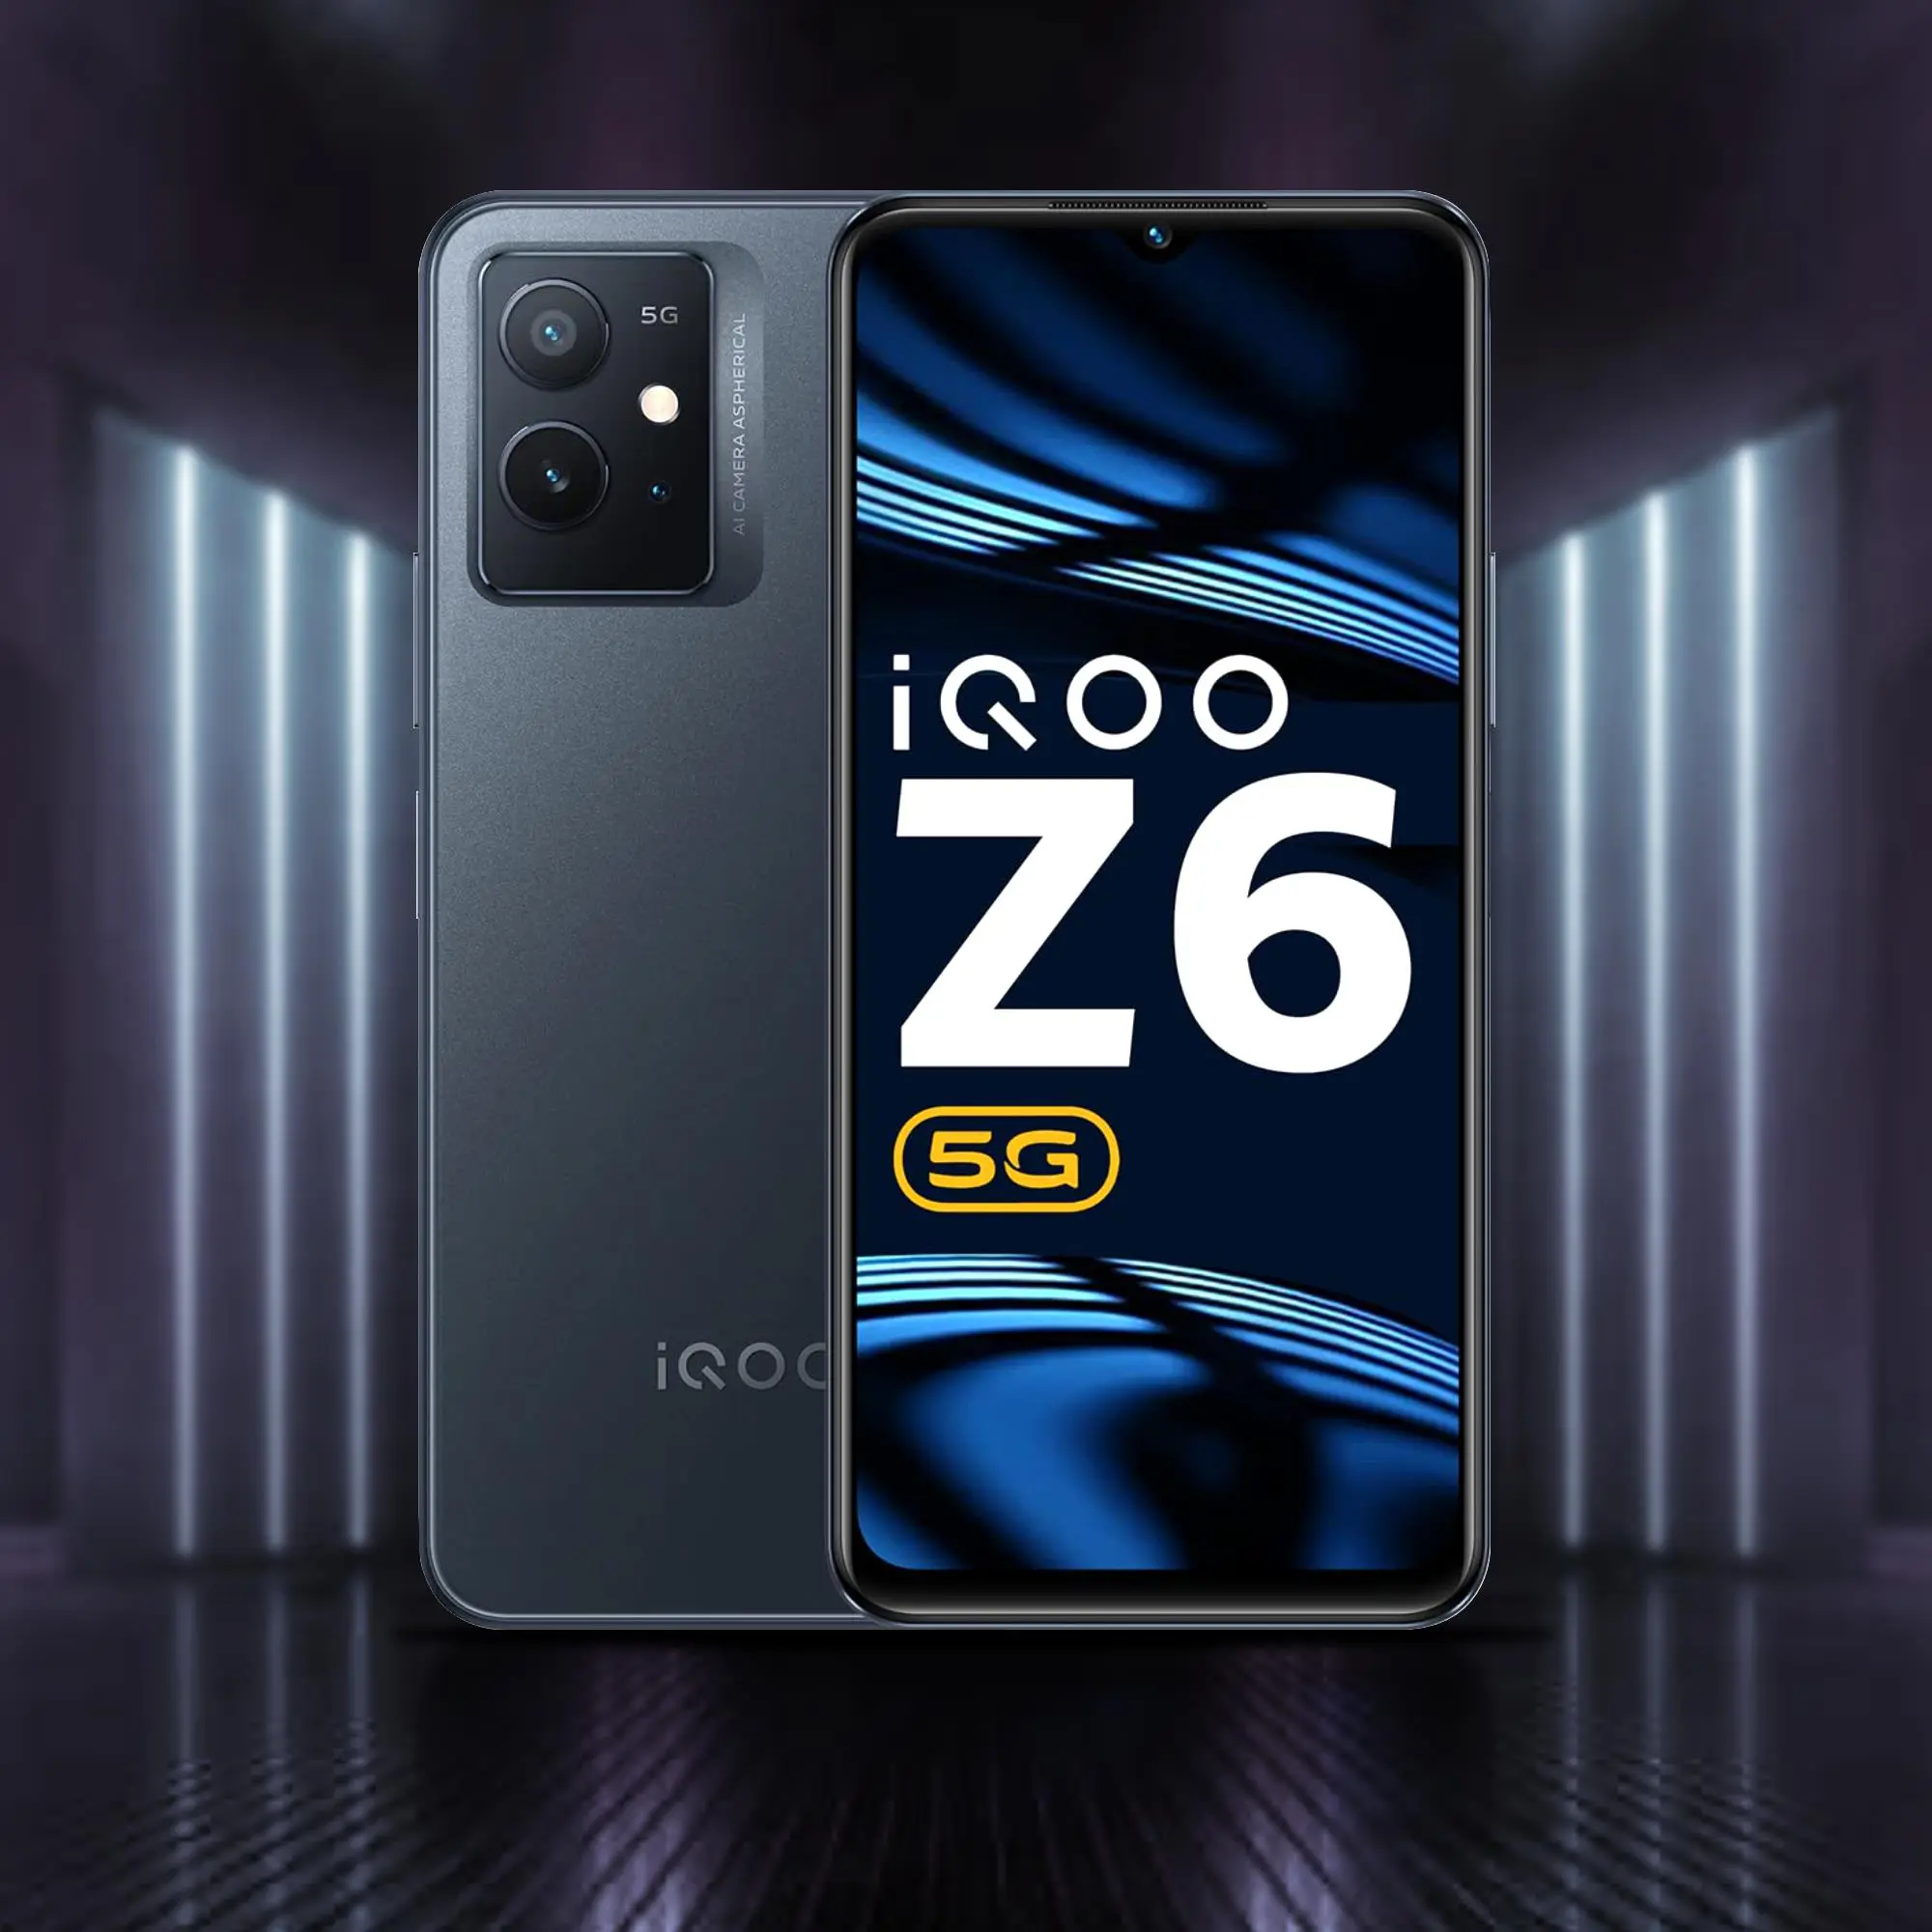 بتصميم أنيق وسعر اقتصادي فيفو تطلق هاتفها الأحدث Vivo iQOO Z6 والسعر "مفاجأة" للفئة الاقتصادية